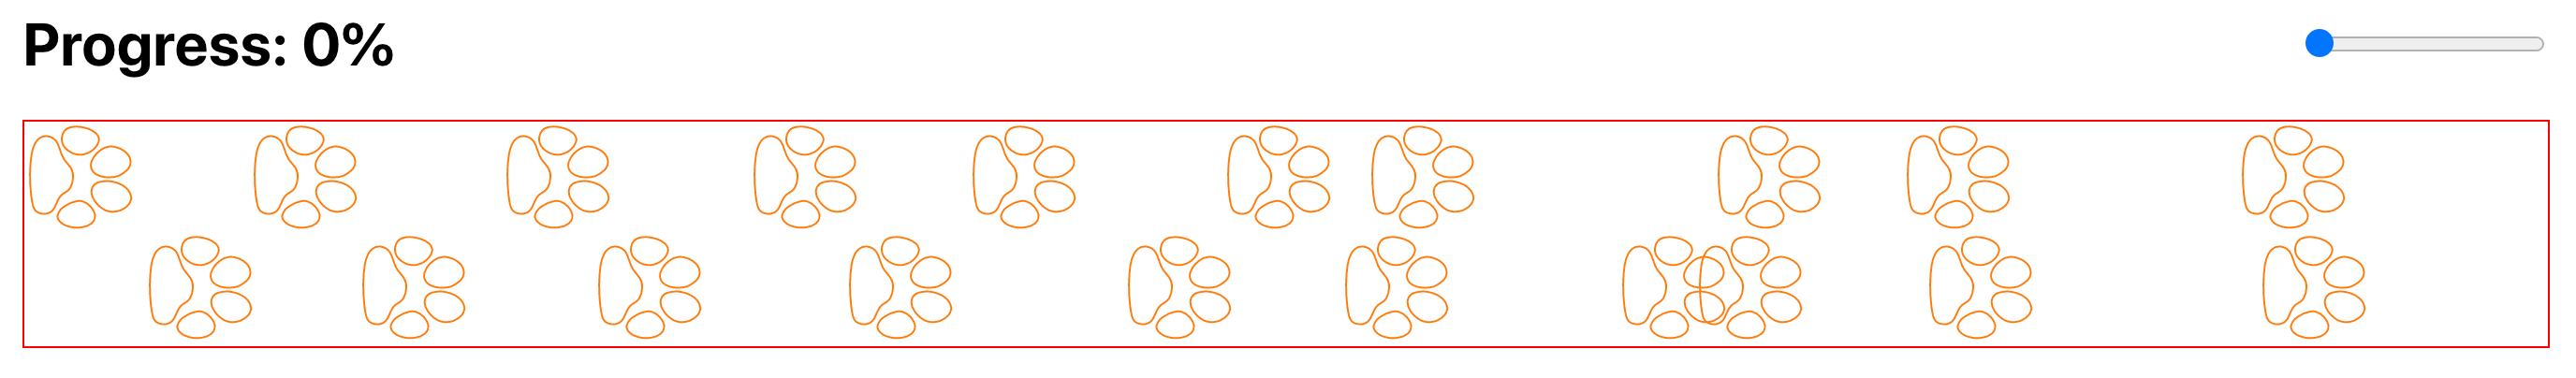 randomize paws x axes